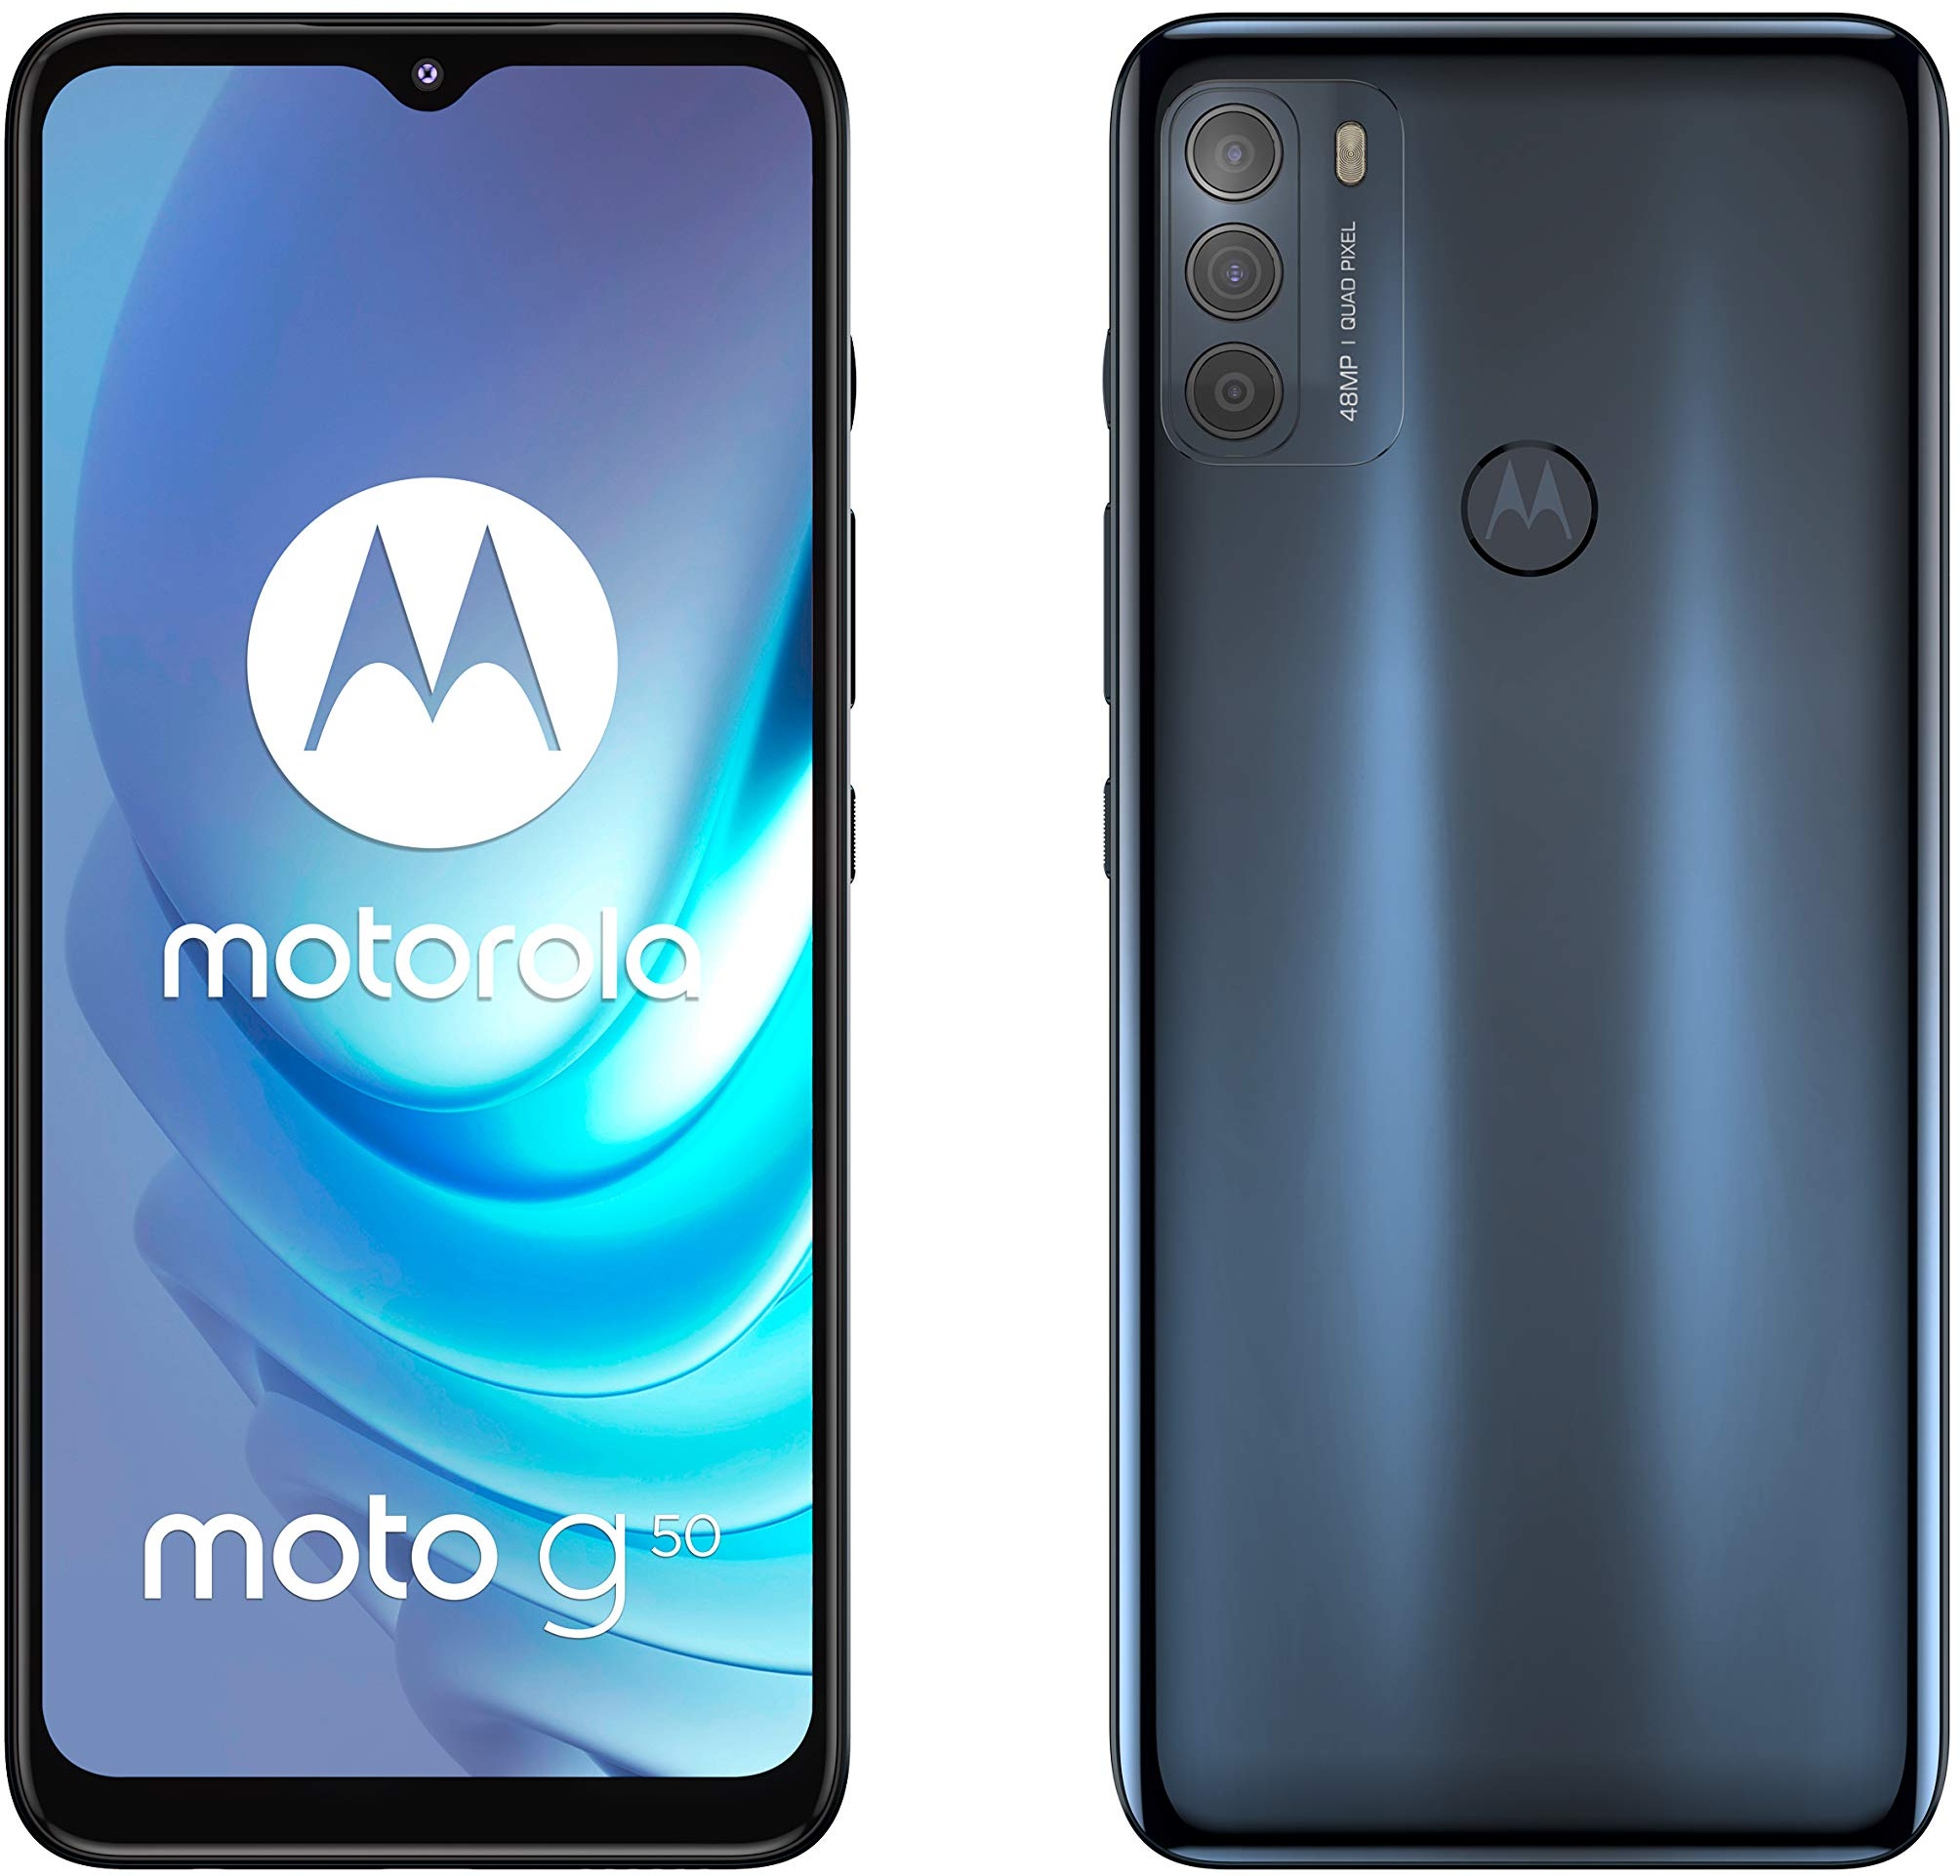 Motorola Smartphones Moto g50 (6,5 Zoll Max Vision HD+, Qualcomm Snapdragon 480 2.0 GHz Octa-Core, 48 MP Triple Kamera, 5000 mAh Akku, Dual-SIM, 4/64 GB, Android 11), Stahlgrau